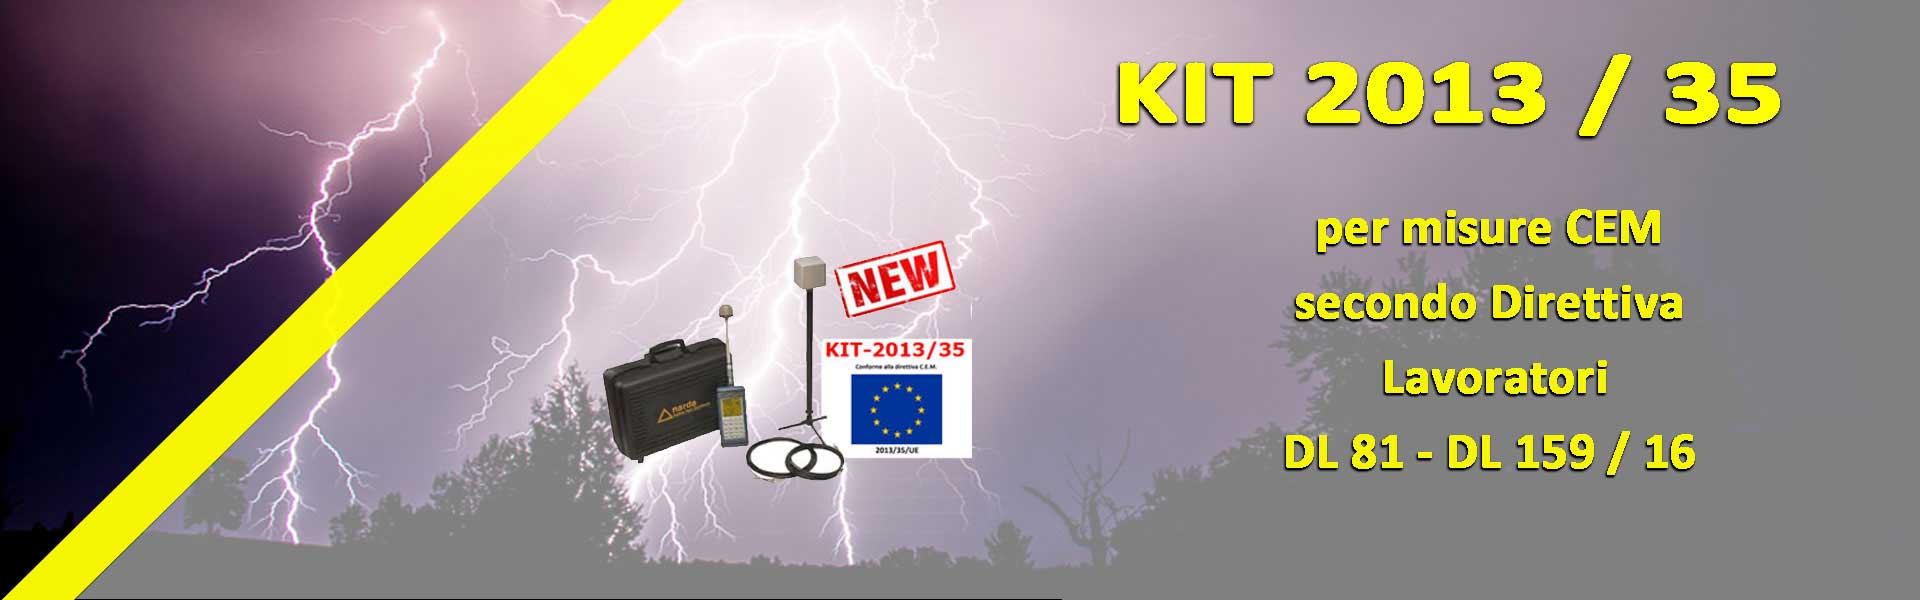 Kit 2013/35 per Misure CEM secondo Direttiva Lavoratori DL81 - DL159/16